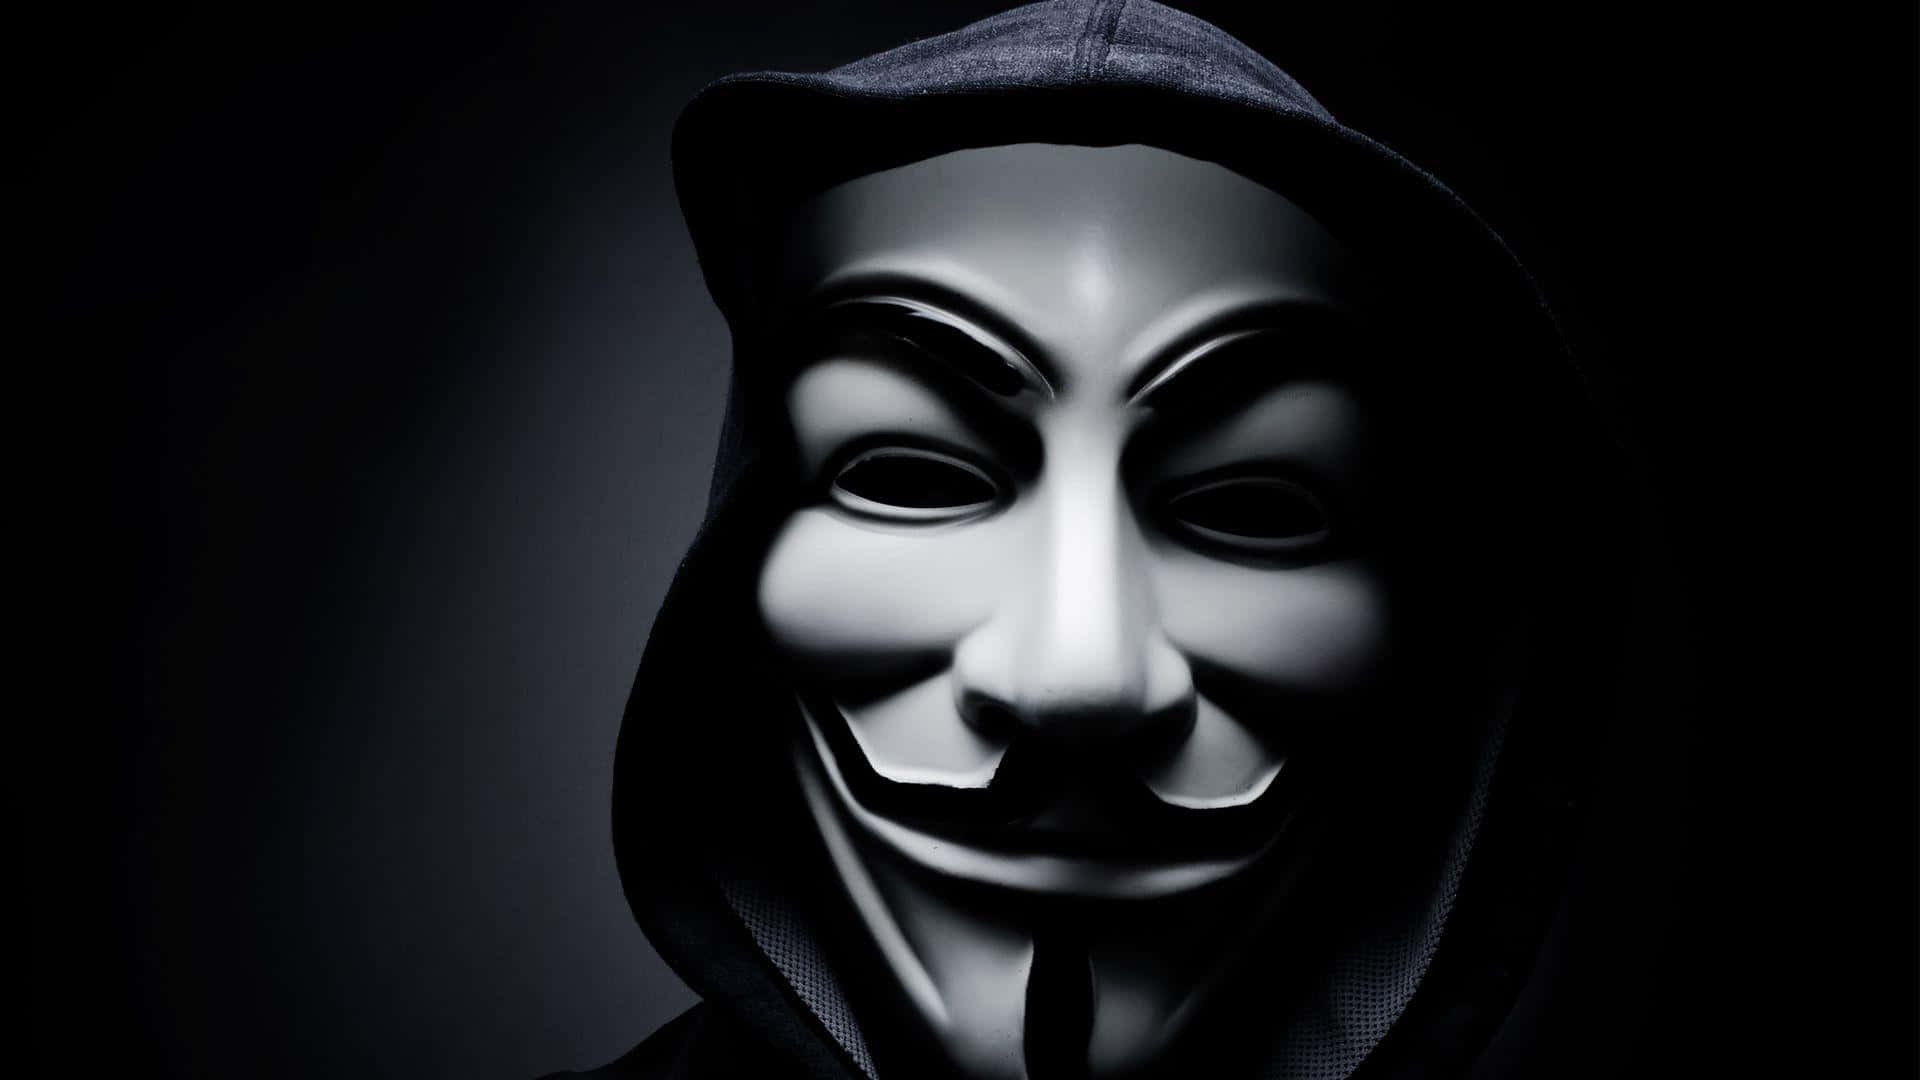 Anonymouskämpft Für Meinungsfreiheit.